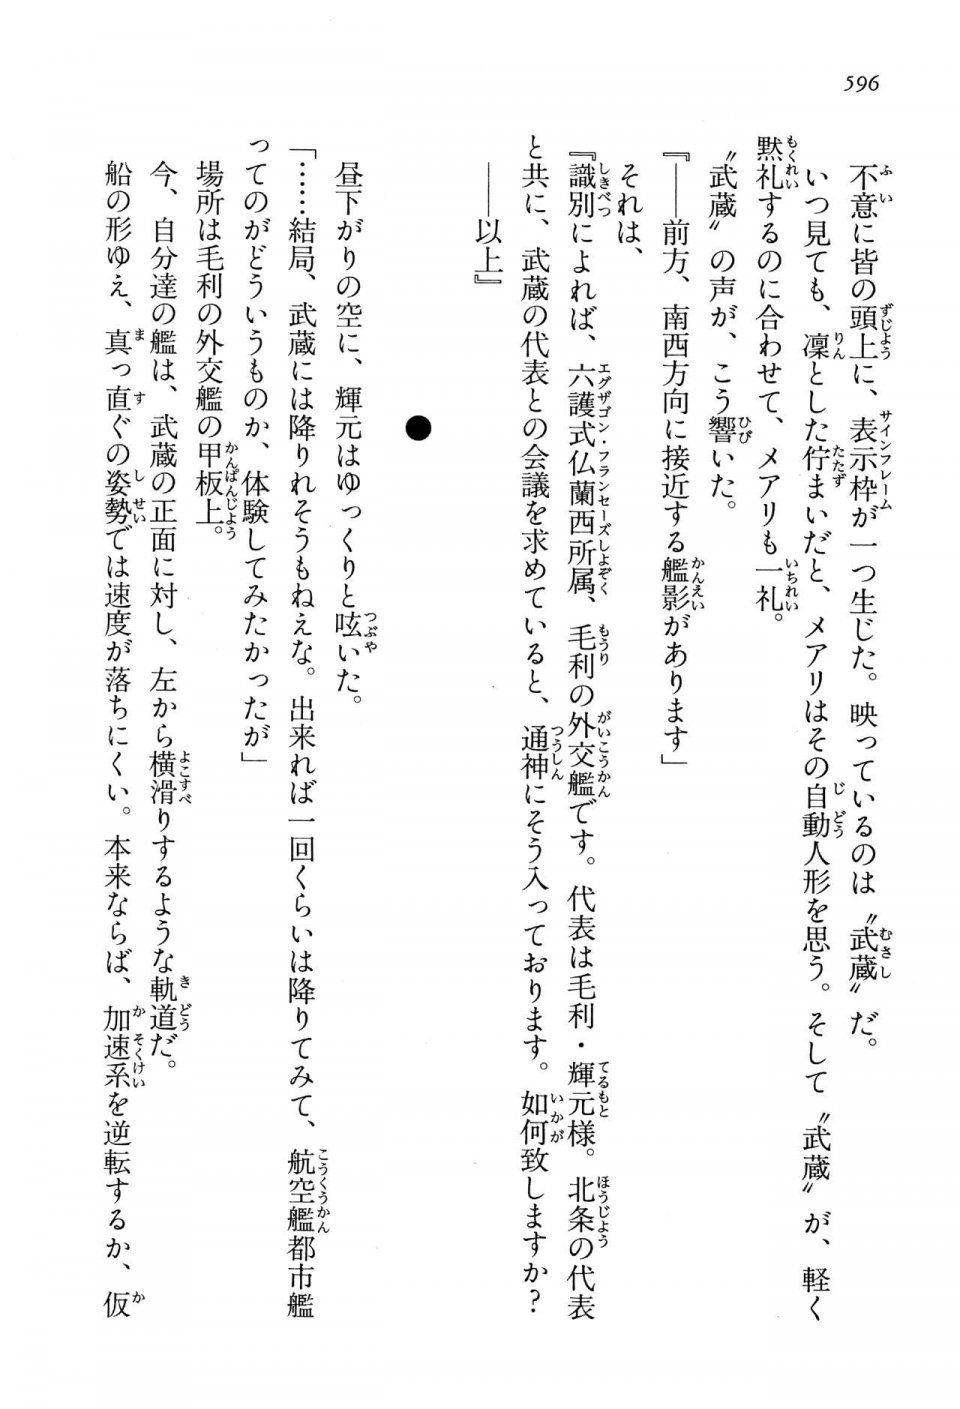 Kyoukai Senjou no Horizon LN Vol 13(6A) - Photo #596